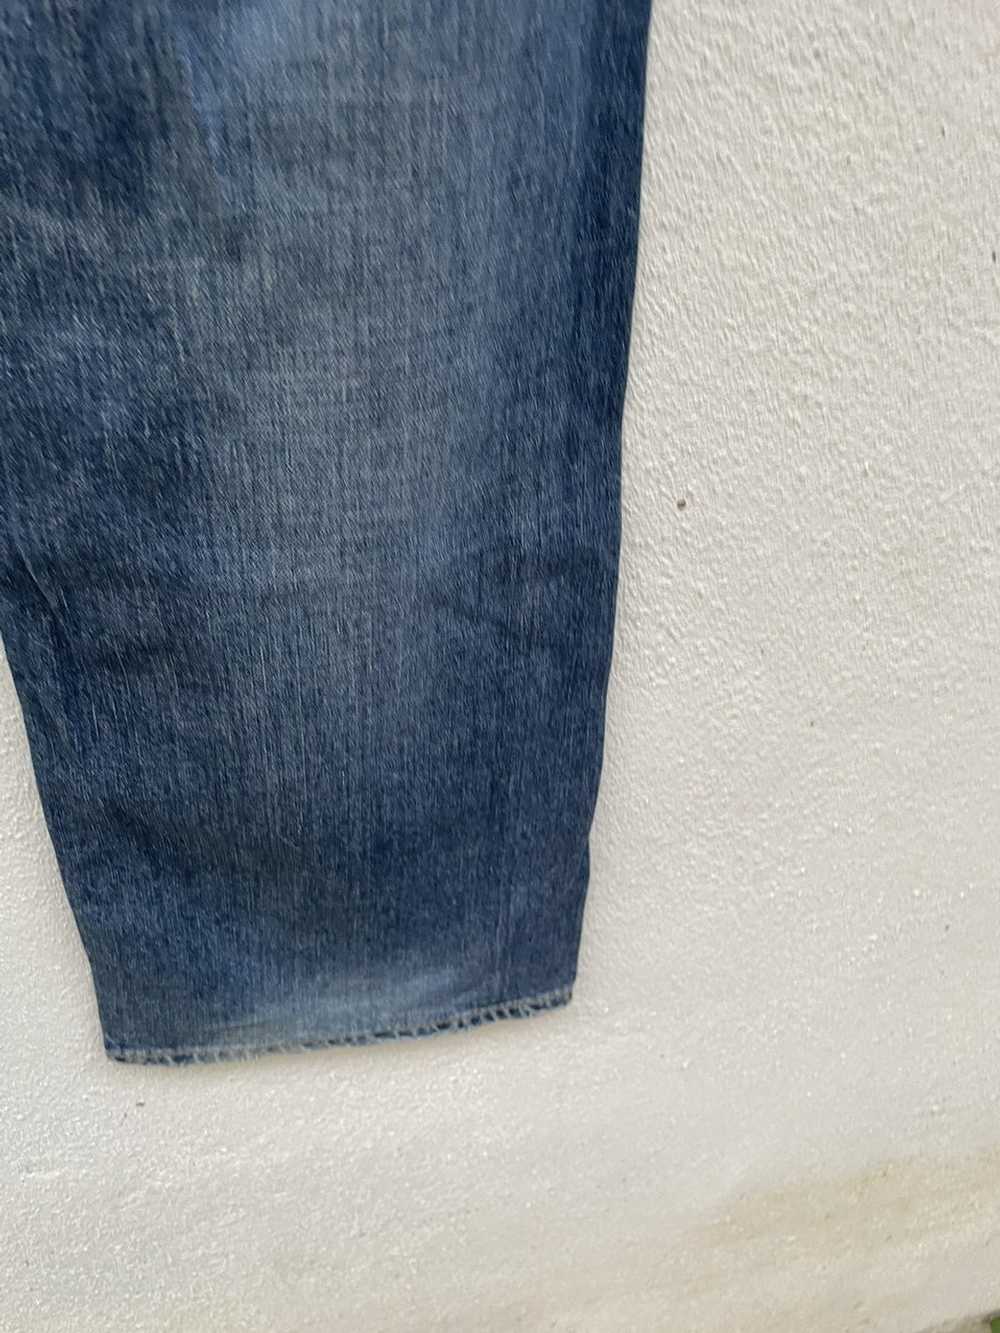 Japanese Brand × John Bull John Bull Jeans - image 11